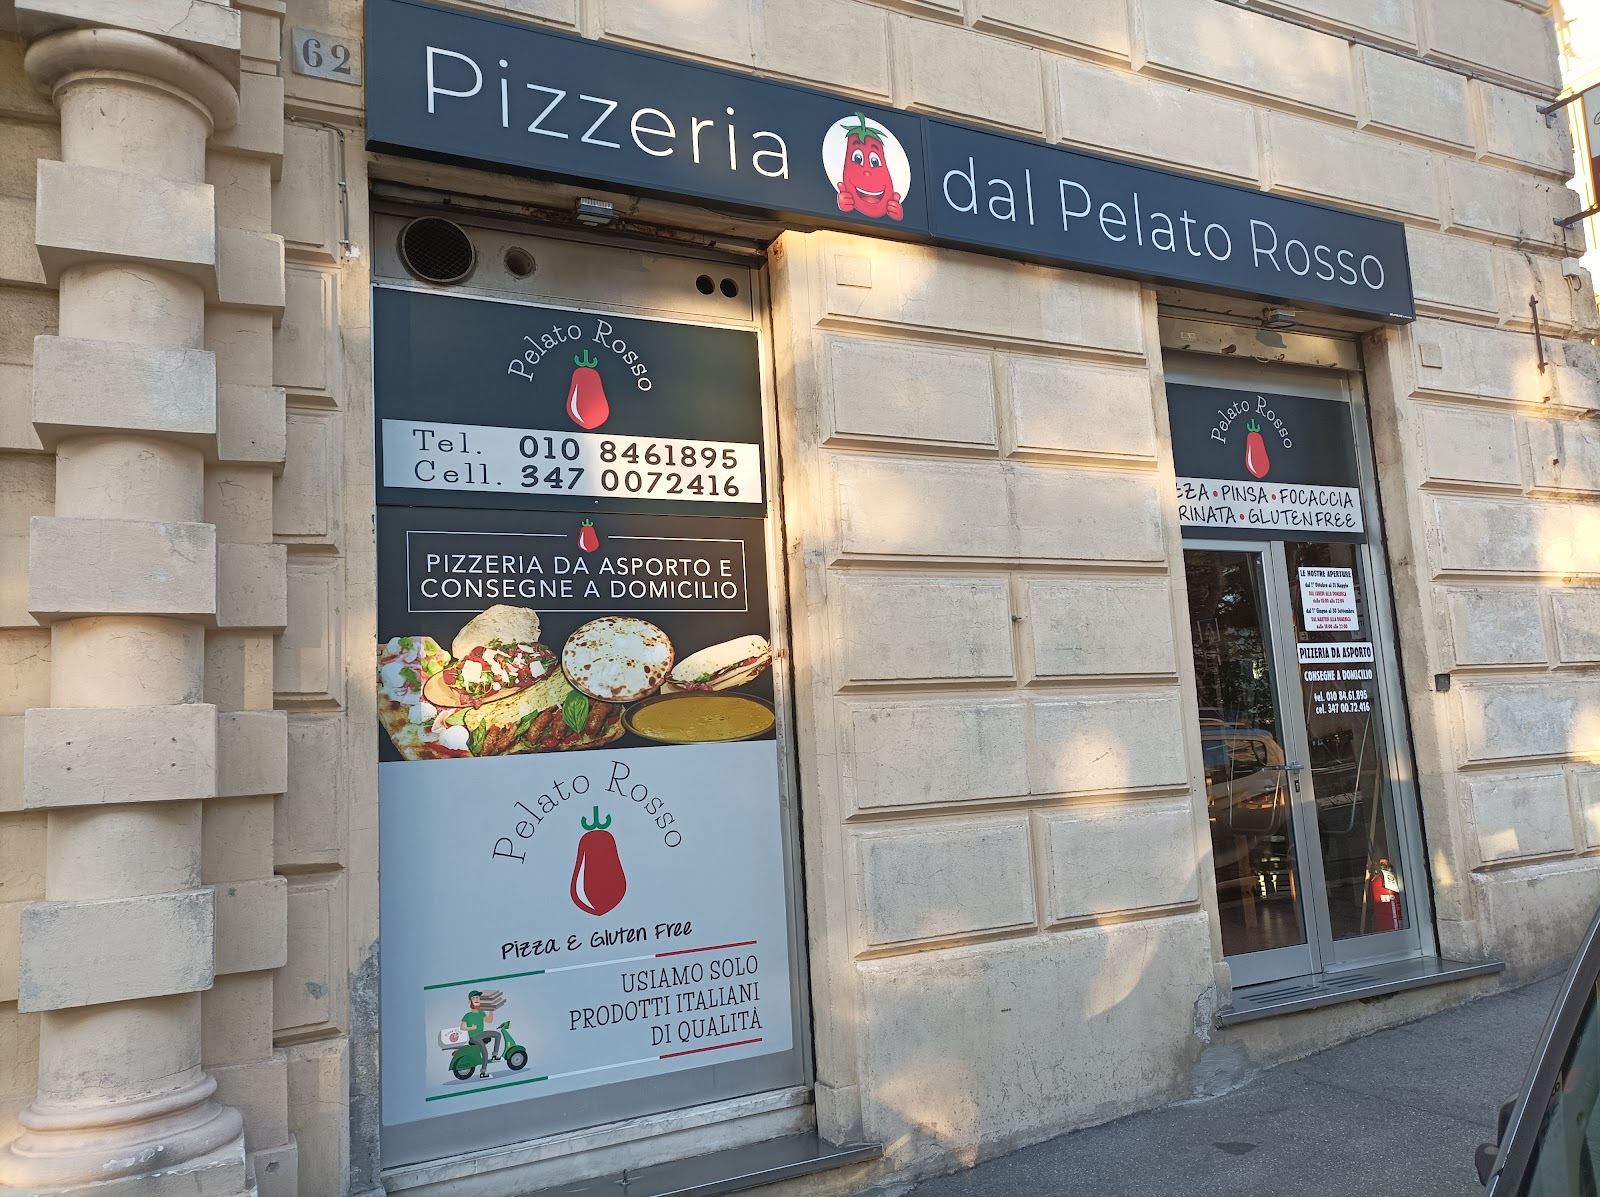 Foto di Pizzeria dal Pelato Rosso di Alfonso serafino